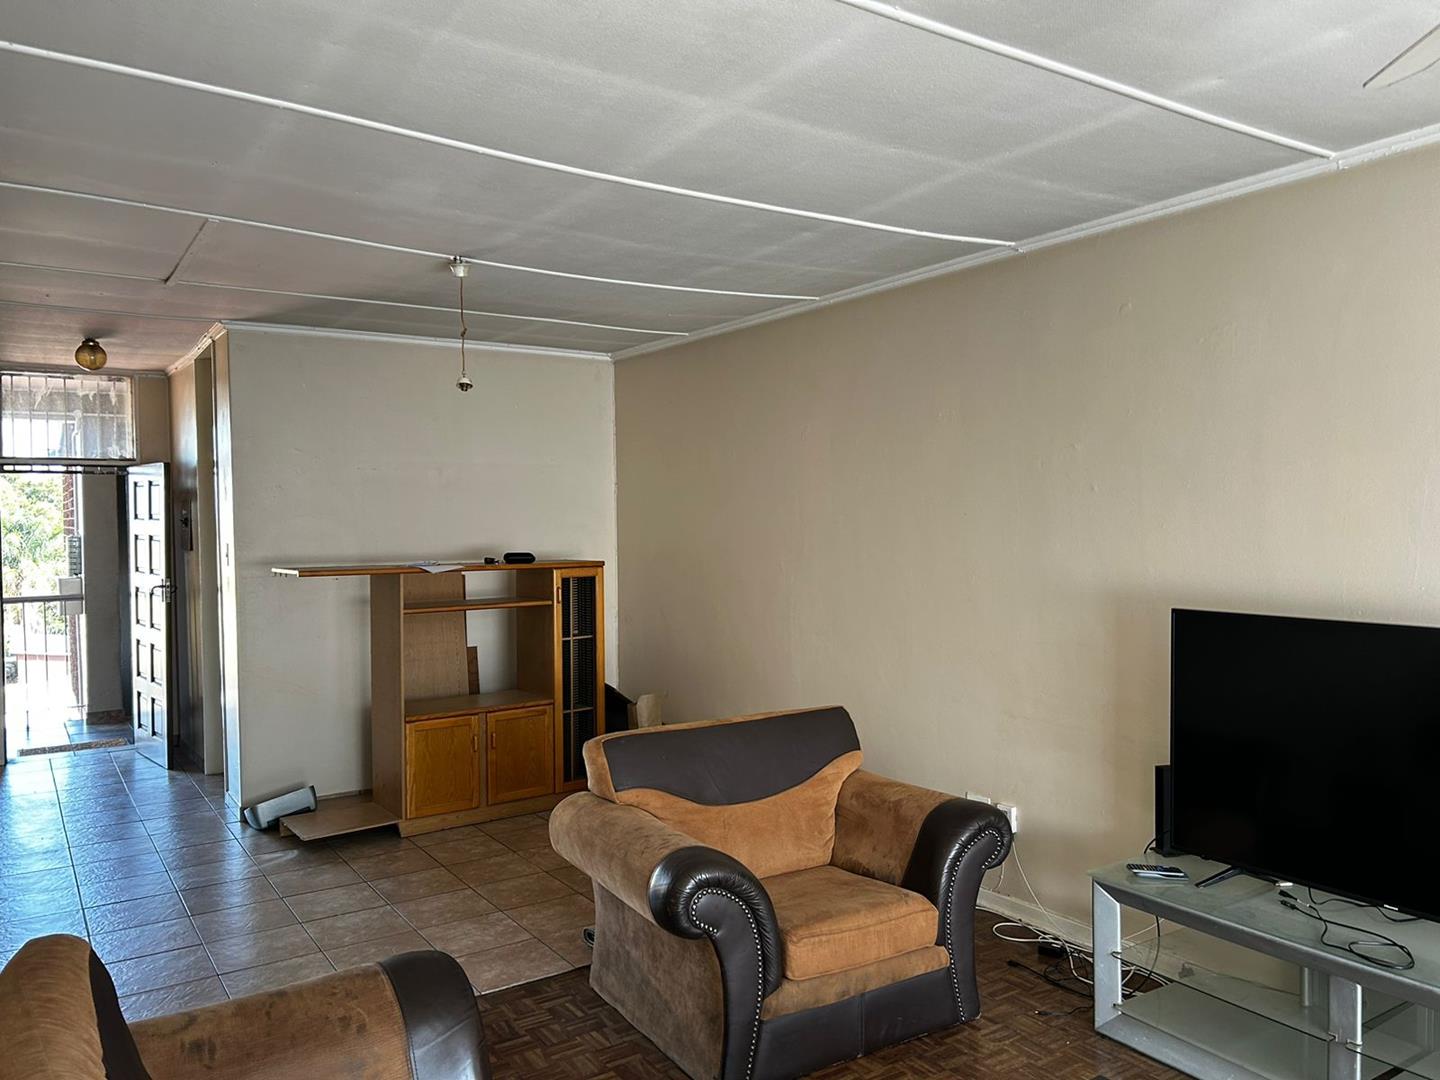 To Let 1 Bedroom Property for Rent in Alberton Gauteng